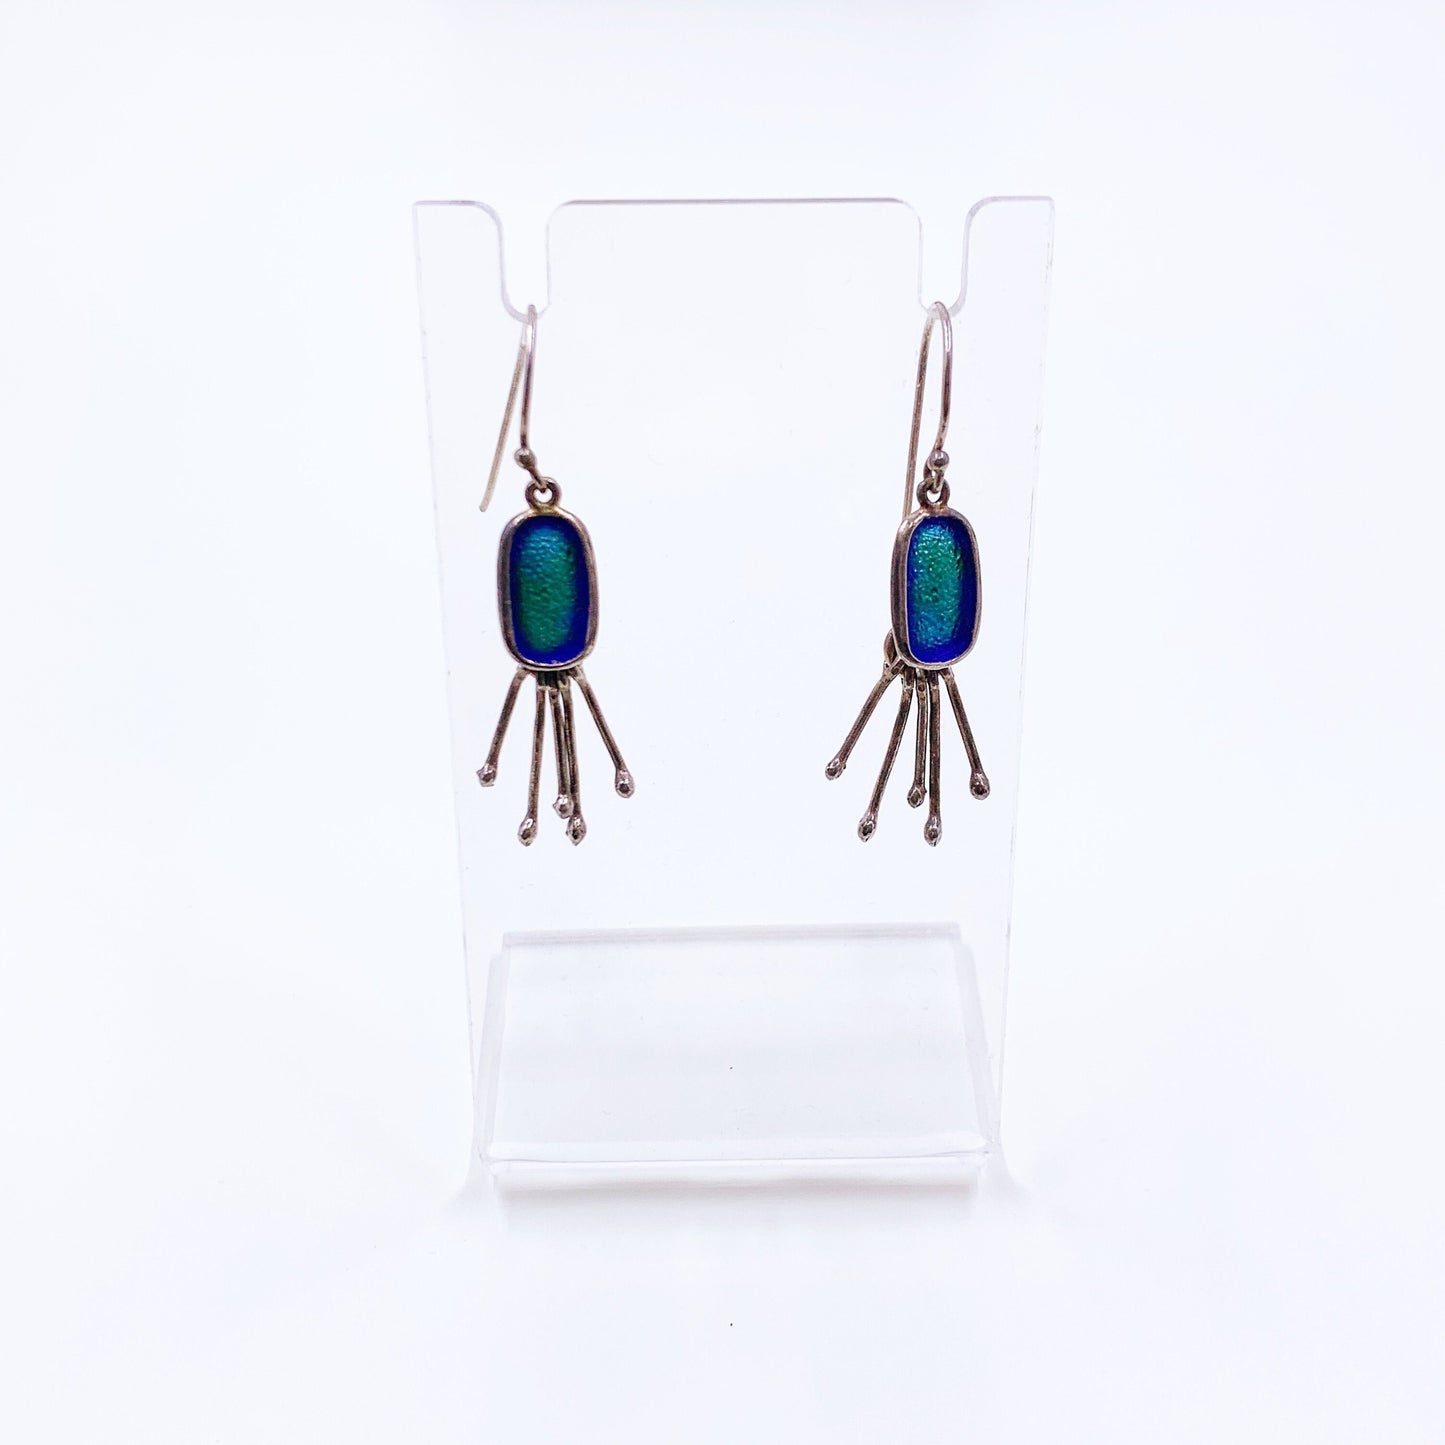 Vintage Silver Modernist Blue Enamel Earrings | Modernist Oval Blue Enamel Fringe Earrings | Articulated Silver Dangle Earrings